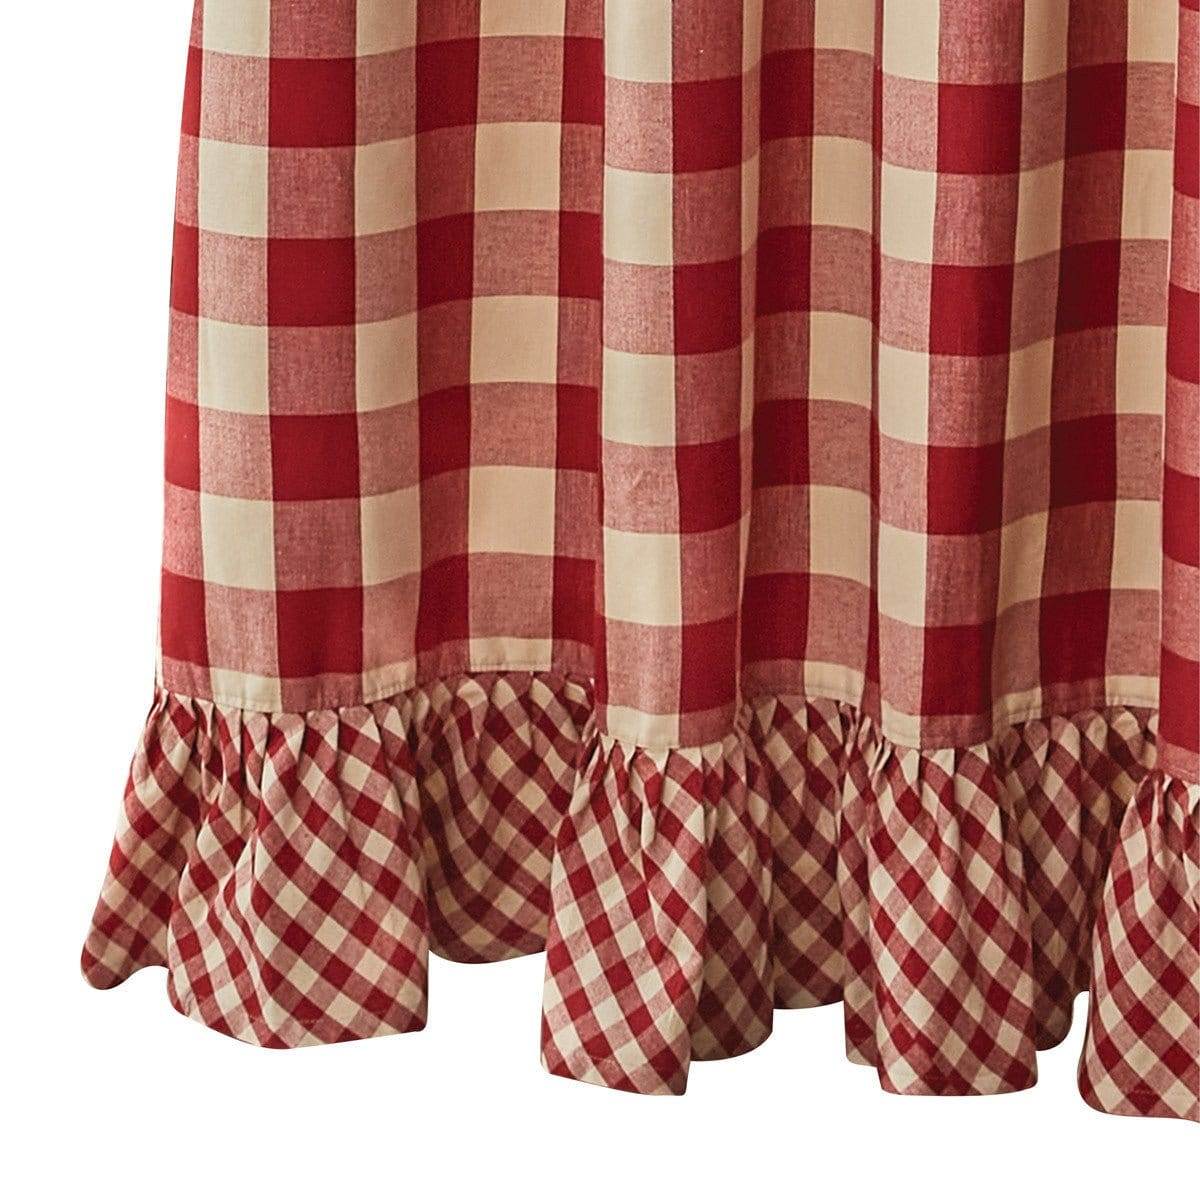 Wicklow Check in Garnet Shower Curtain-Park Designs-The Village Merchant